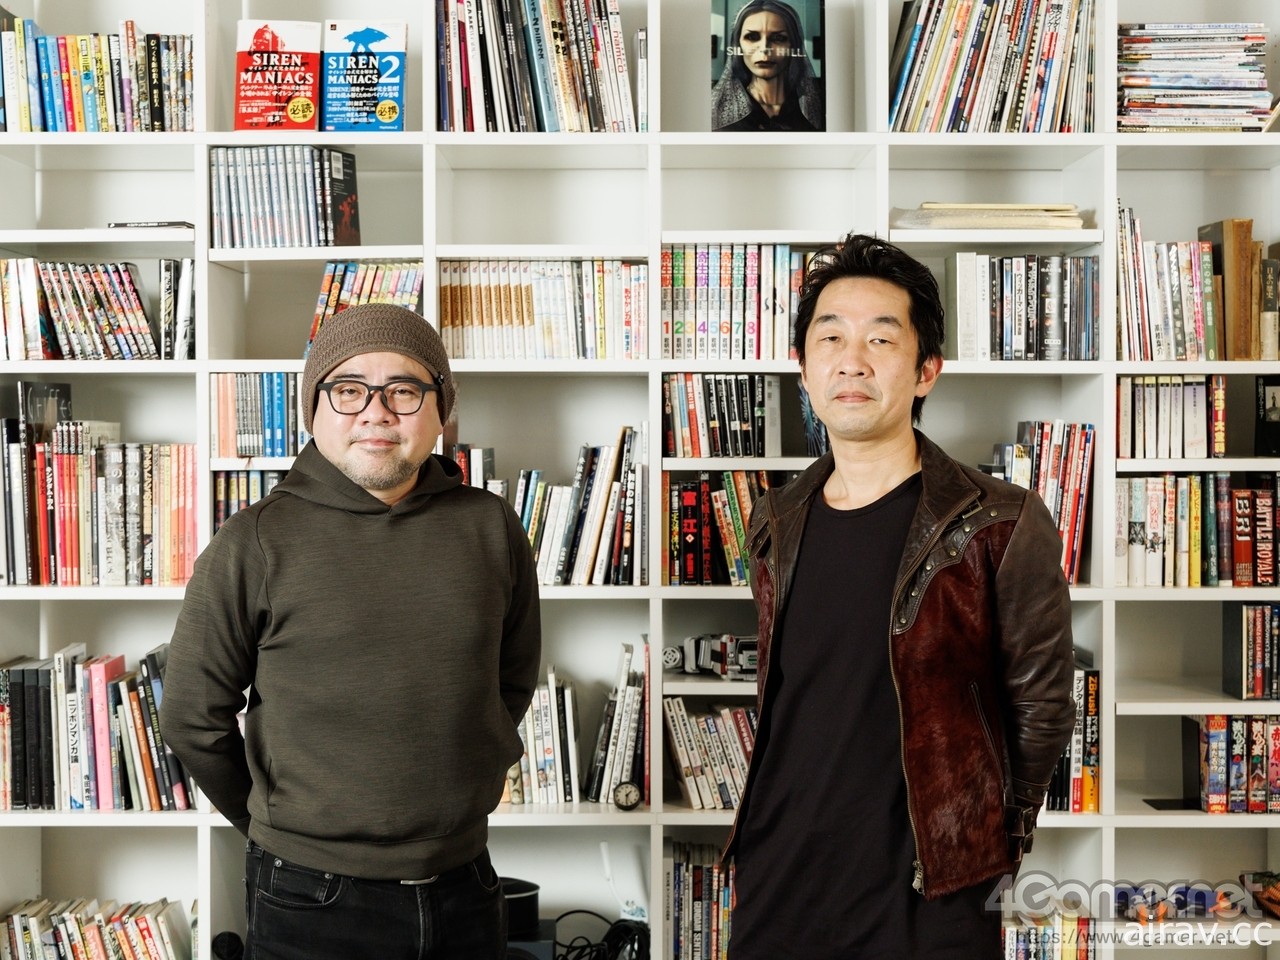 《野狗子》製作人外山圭一郎與作曲家山岡晃專訪 分享 “恐怖 × 娛樂” 謎樣新作理念